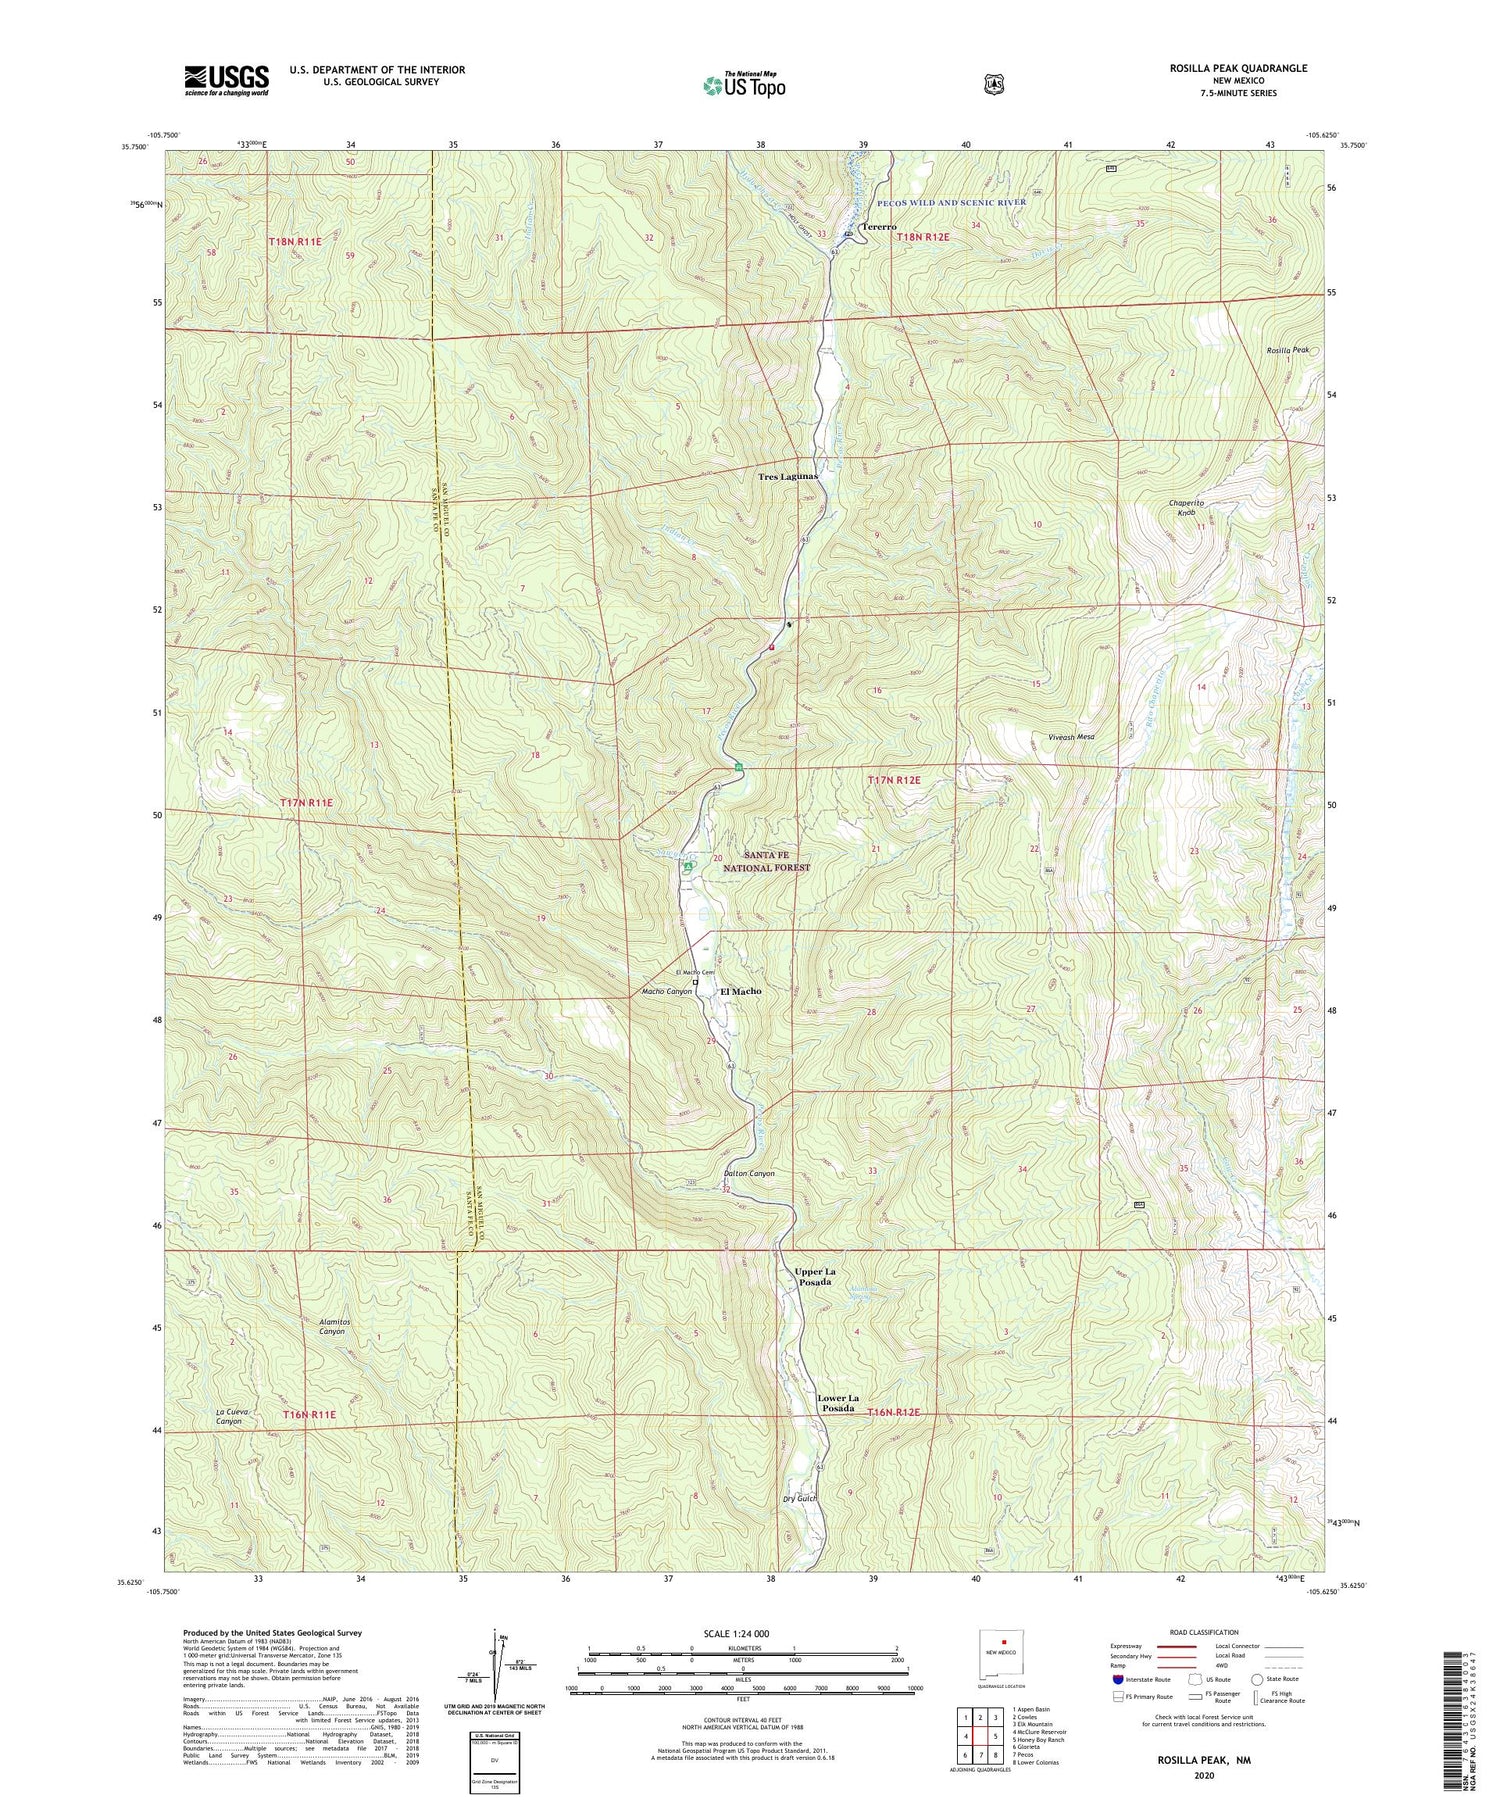 Rosilla Peak New Mexico US Topo Map Image